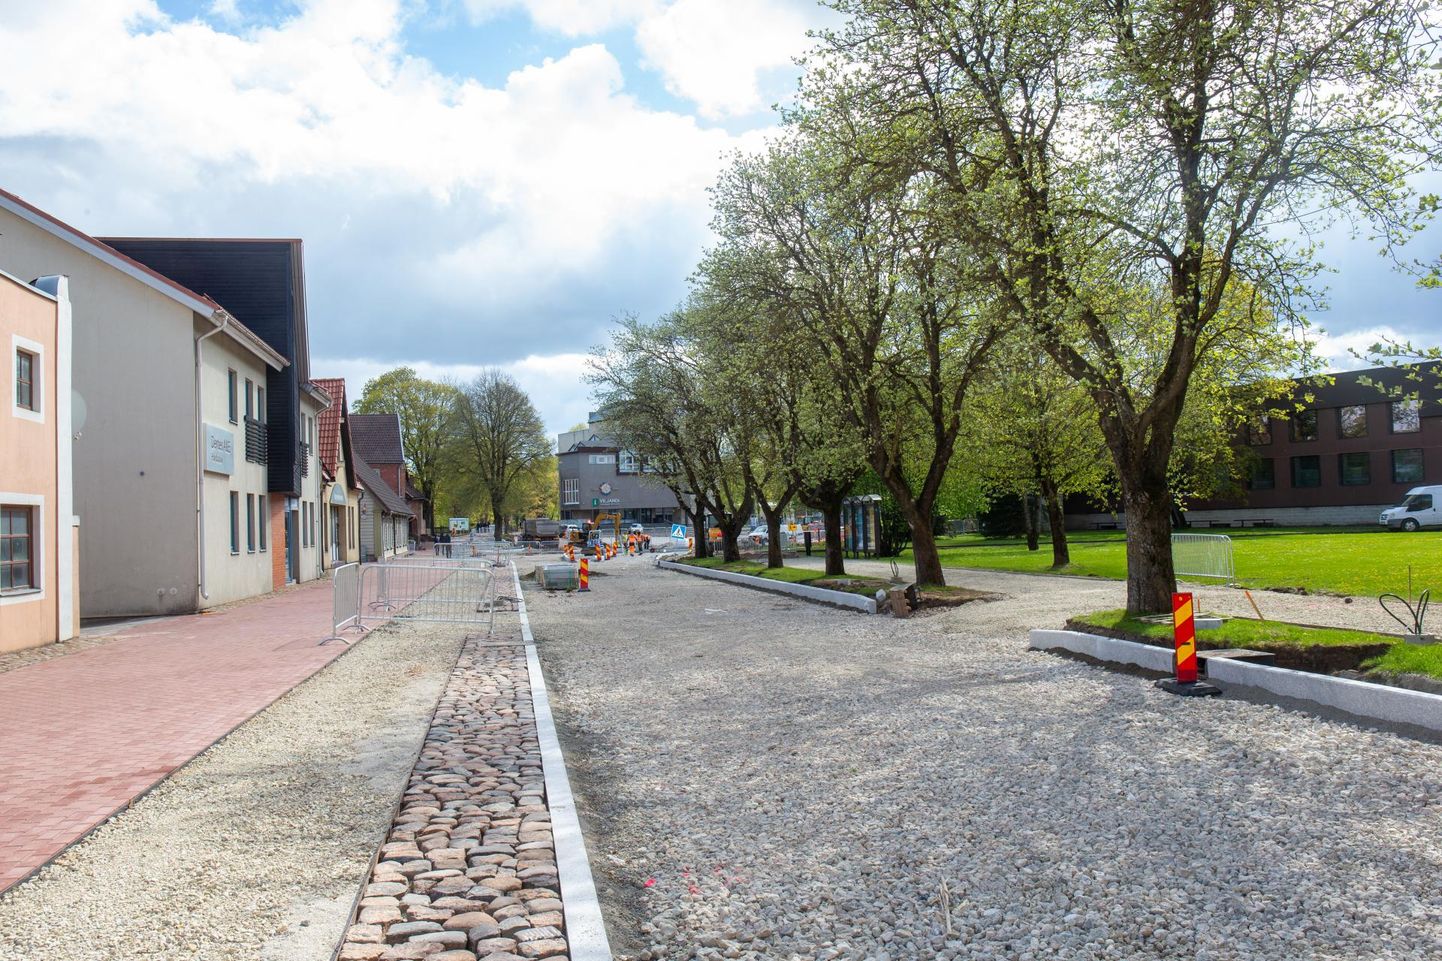 Tallinna tänav on juba hoopis teise ilme võtnud. Kui esialgu pidi töö lõppema Tartu tänava ristmikul, siis juunis asutakse tööle ka Uku keskuseni ulatuval lõigul.